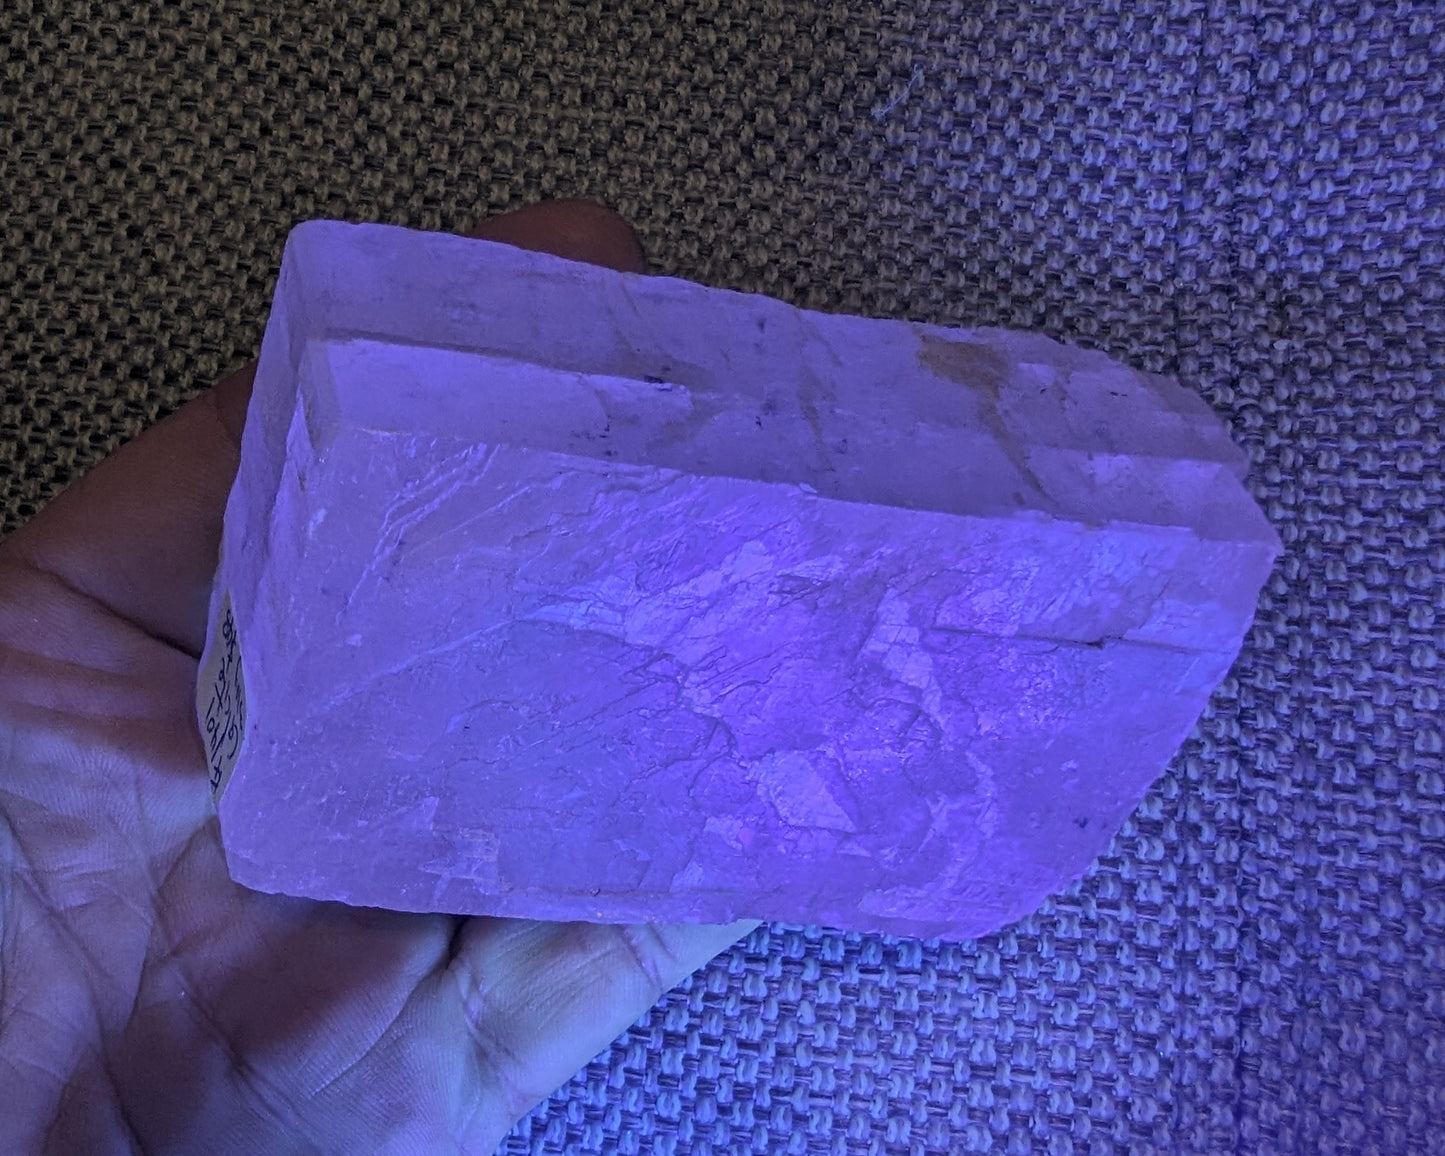 White Calcite Spar from Iceland 310g